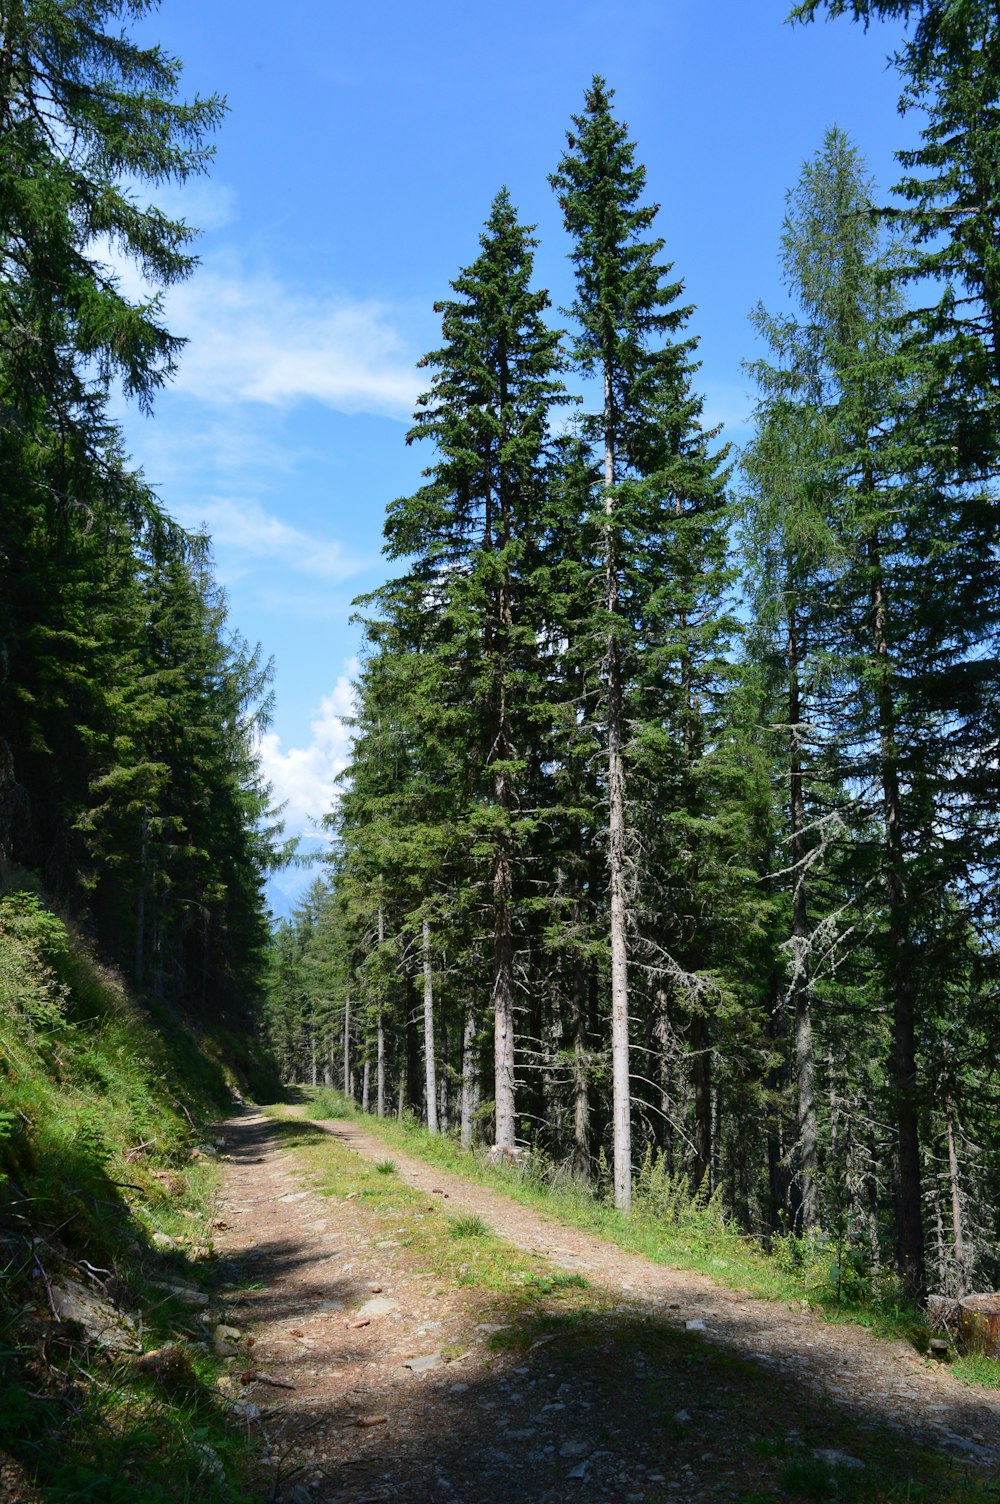 strada circondata da alberi alti e verdi sotto cieli azzurri e bianchi